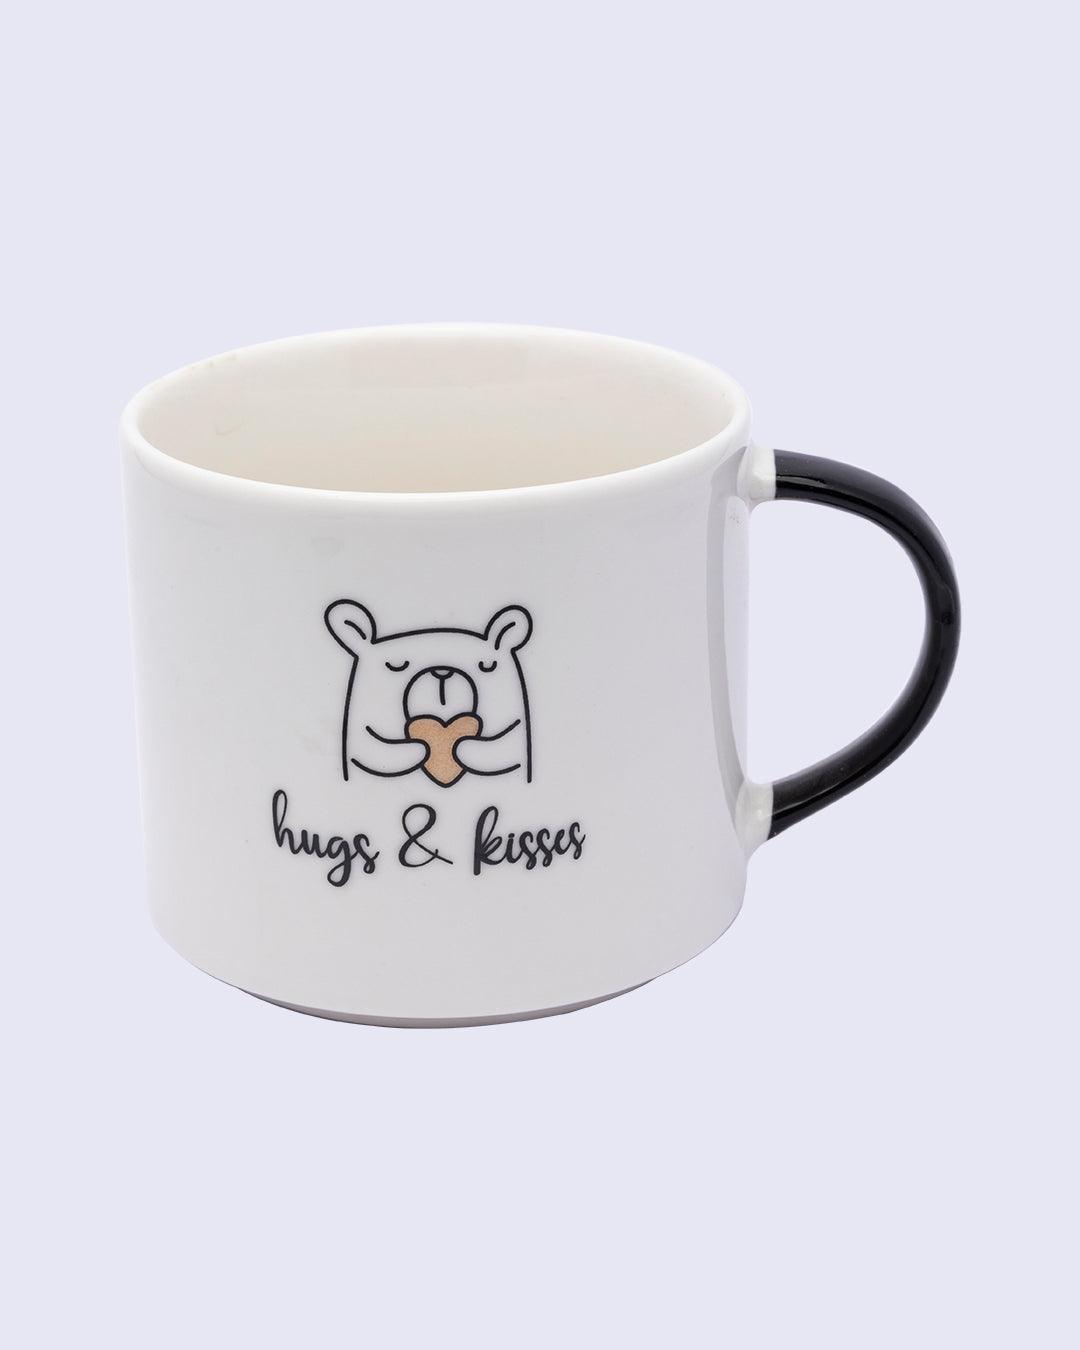 Mug, with Quotation, White, Ceramic, 420 mL - MARKET 99